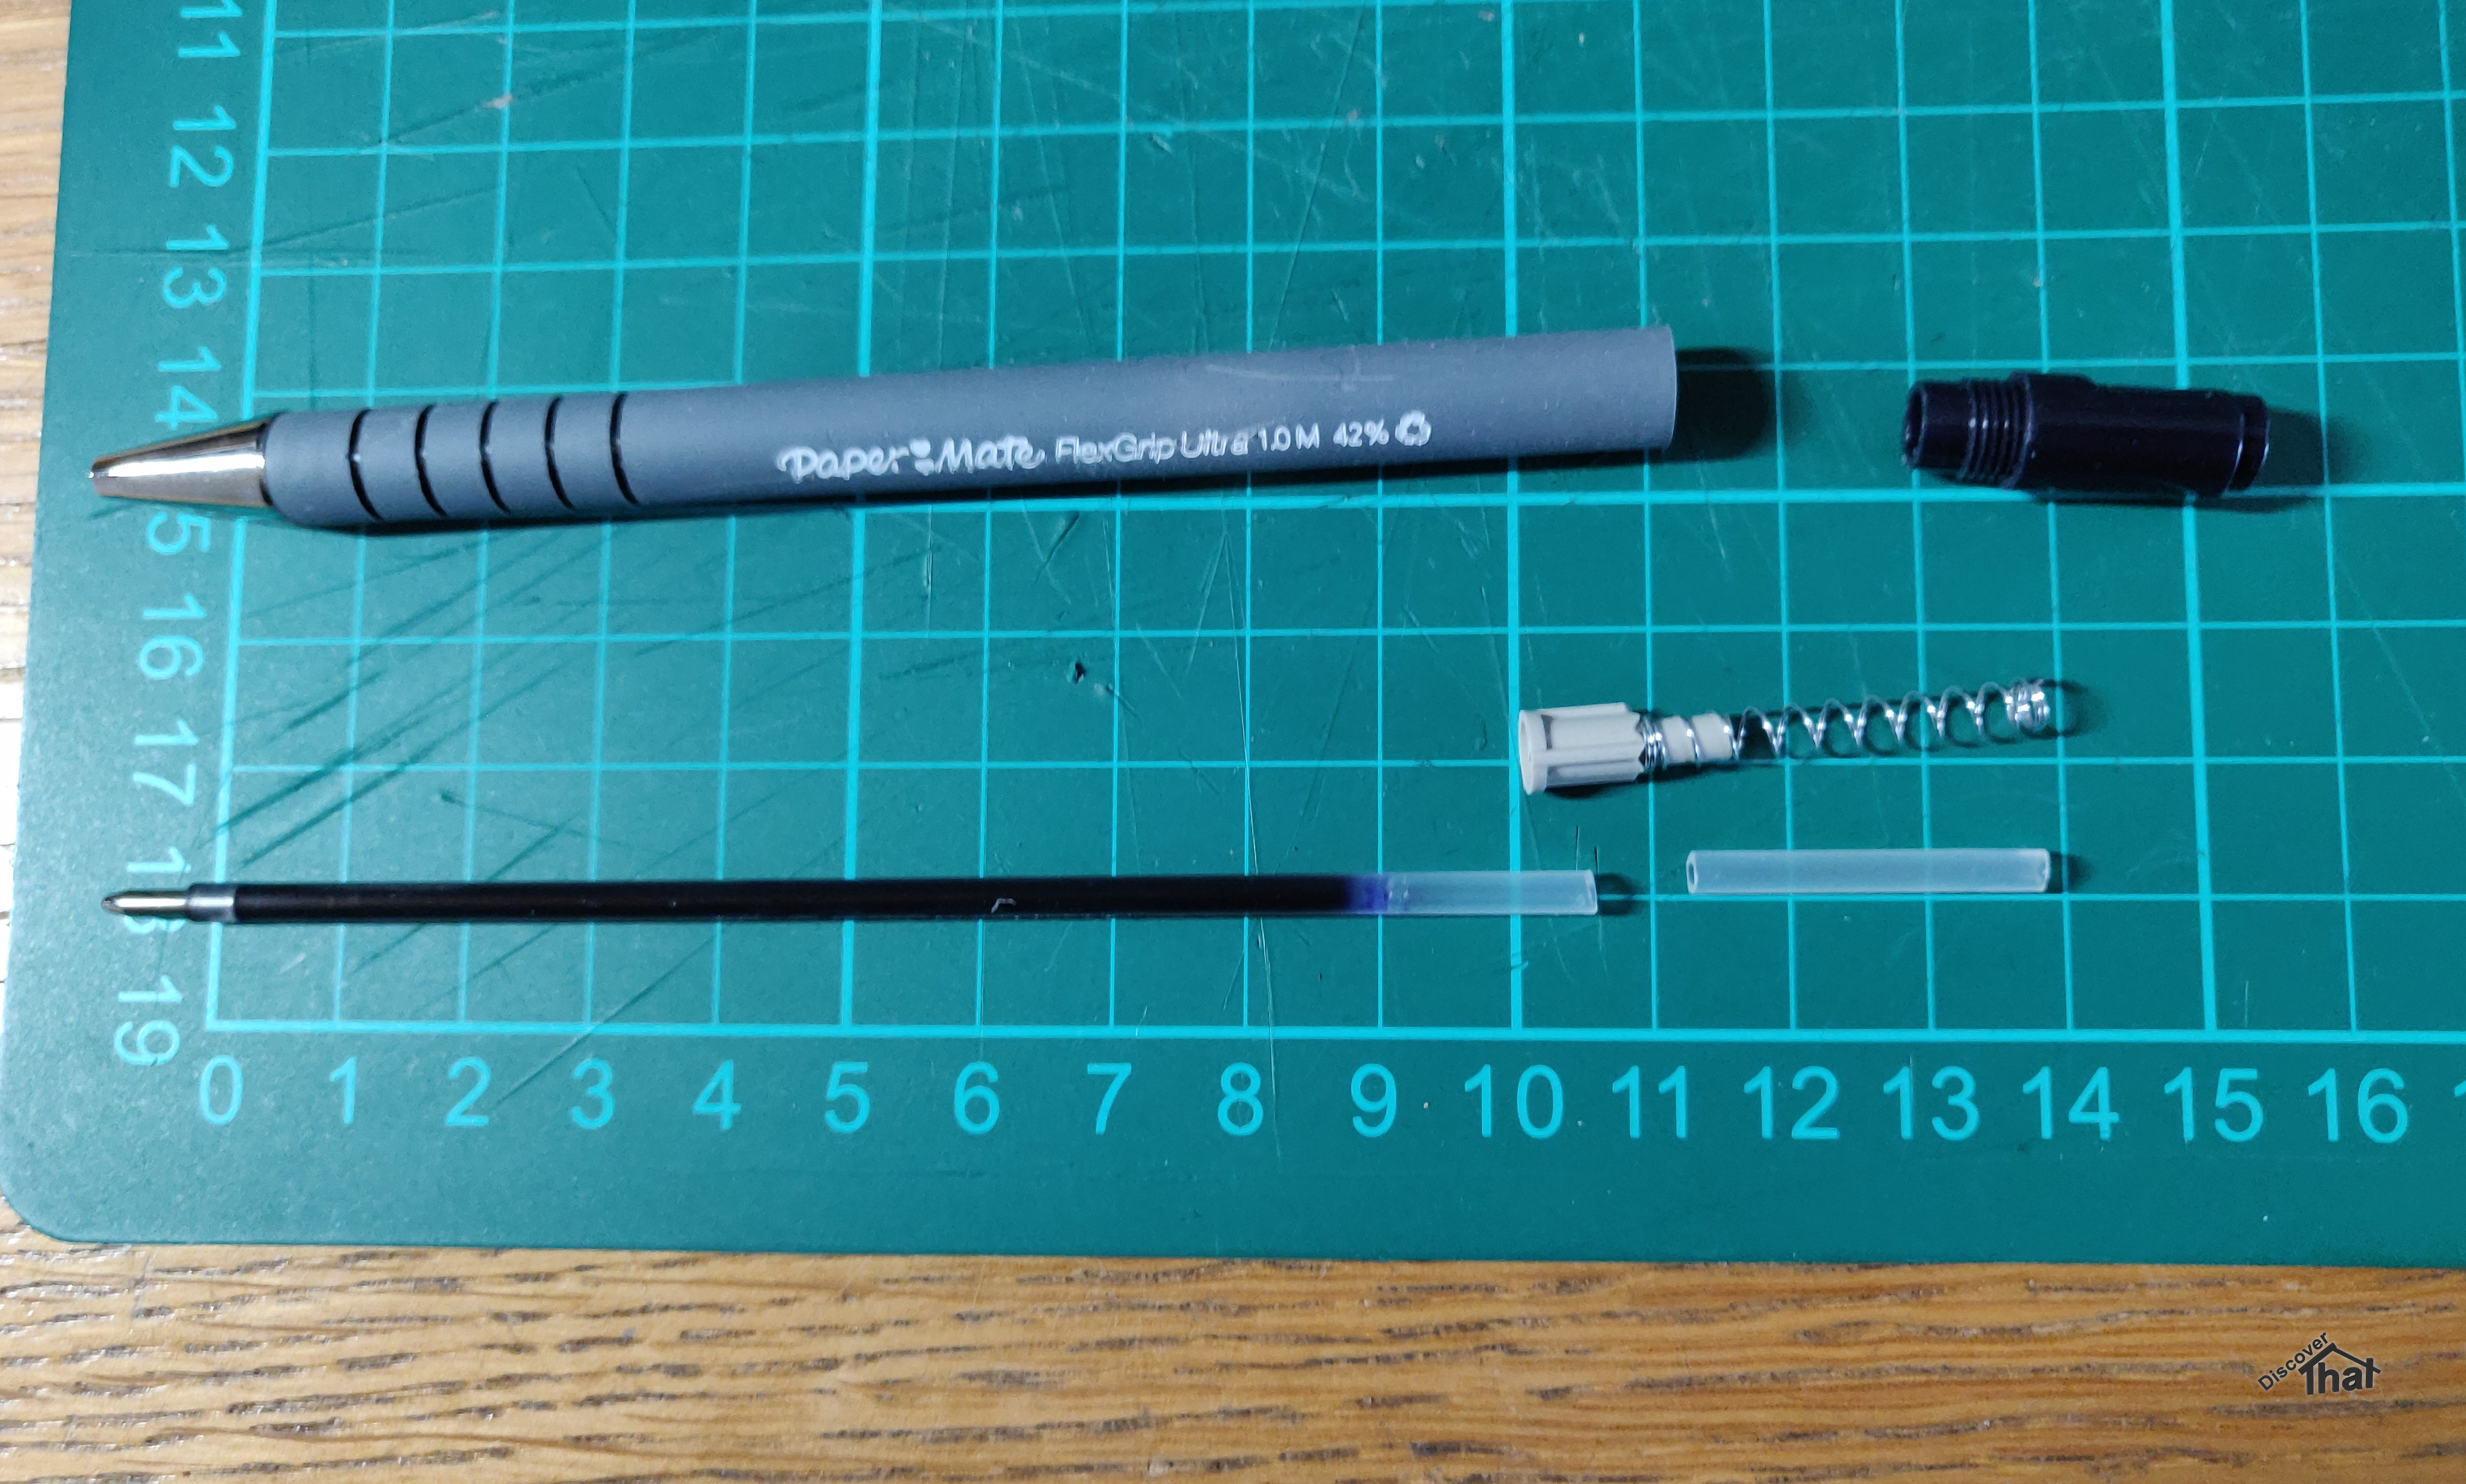 Pen holder for a CNC plotter